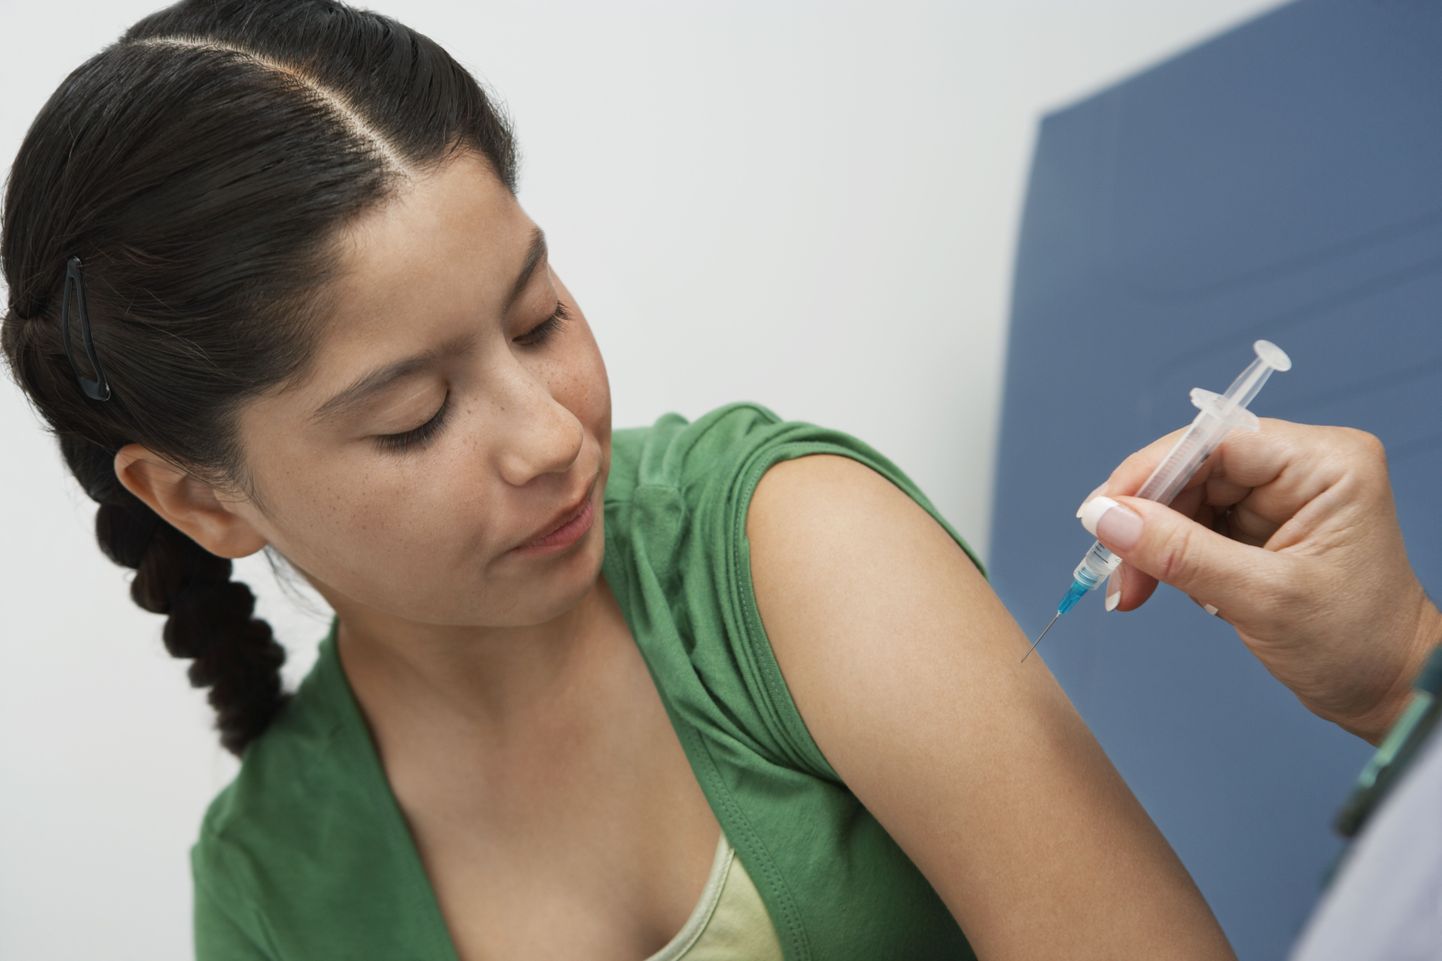 Семейные врачи убеждены в необходимости вакцинации и призывают родителей при появлении вопросов или сомнений советоваться с семейным врачом или семейной медсестрой.